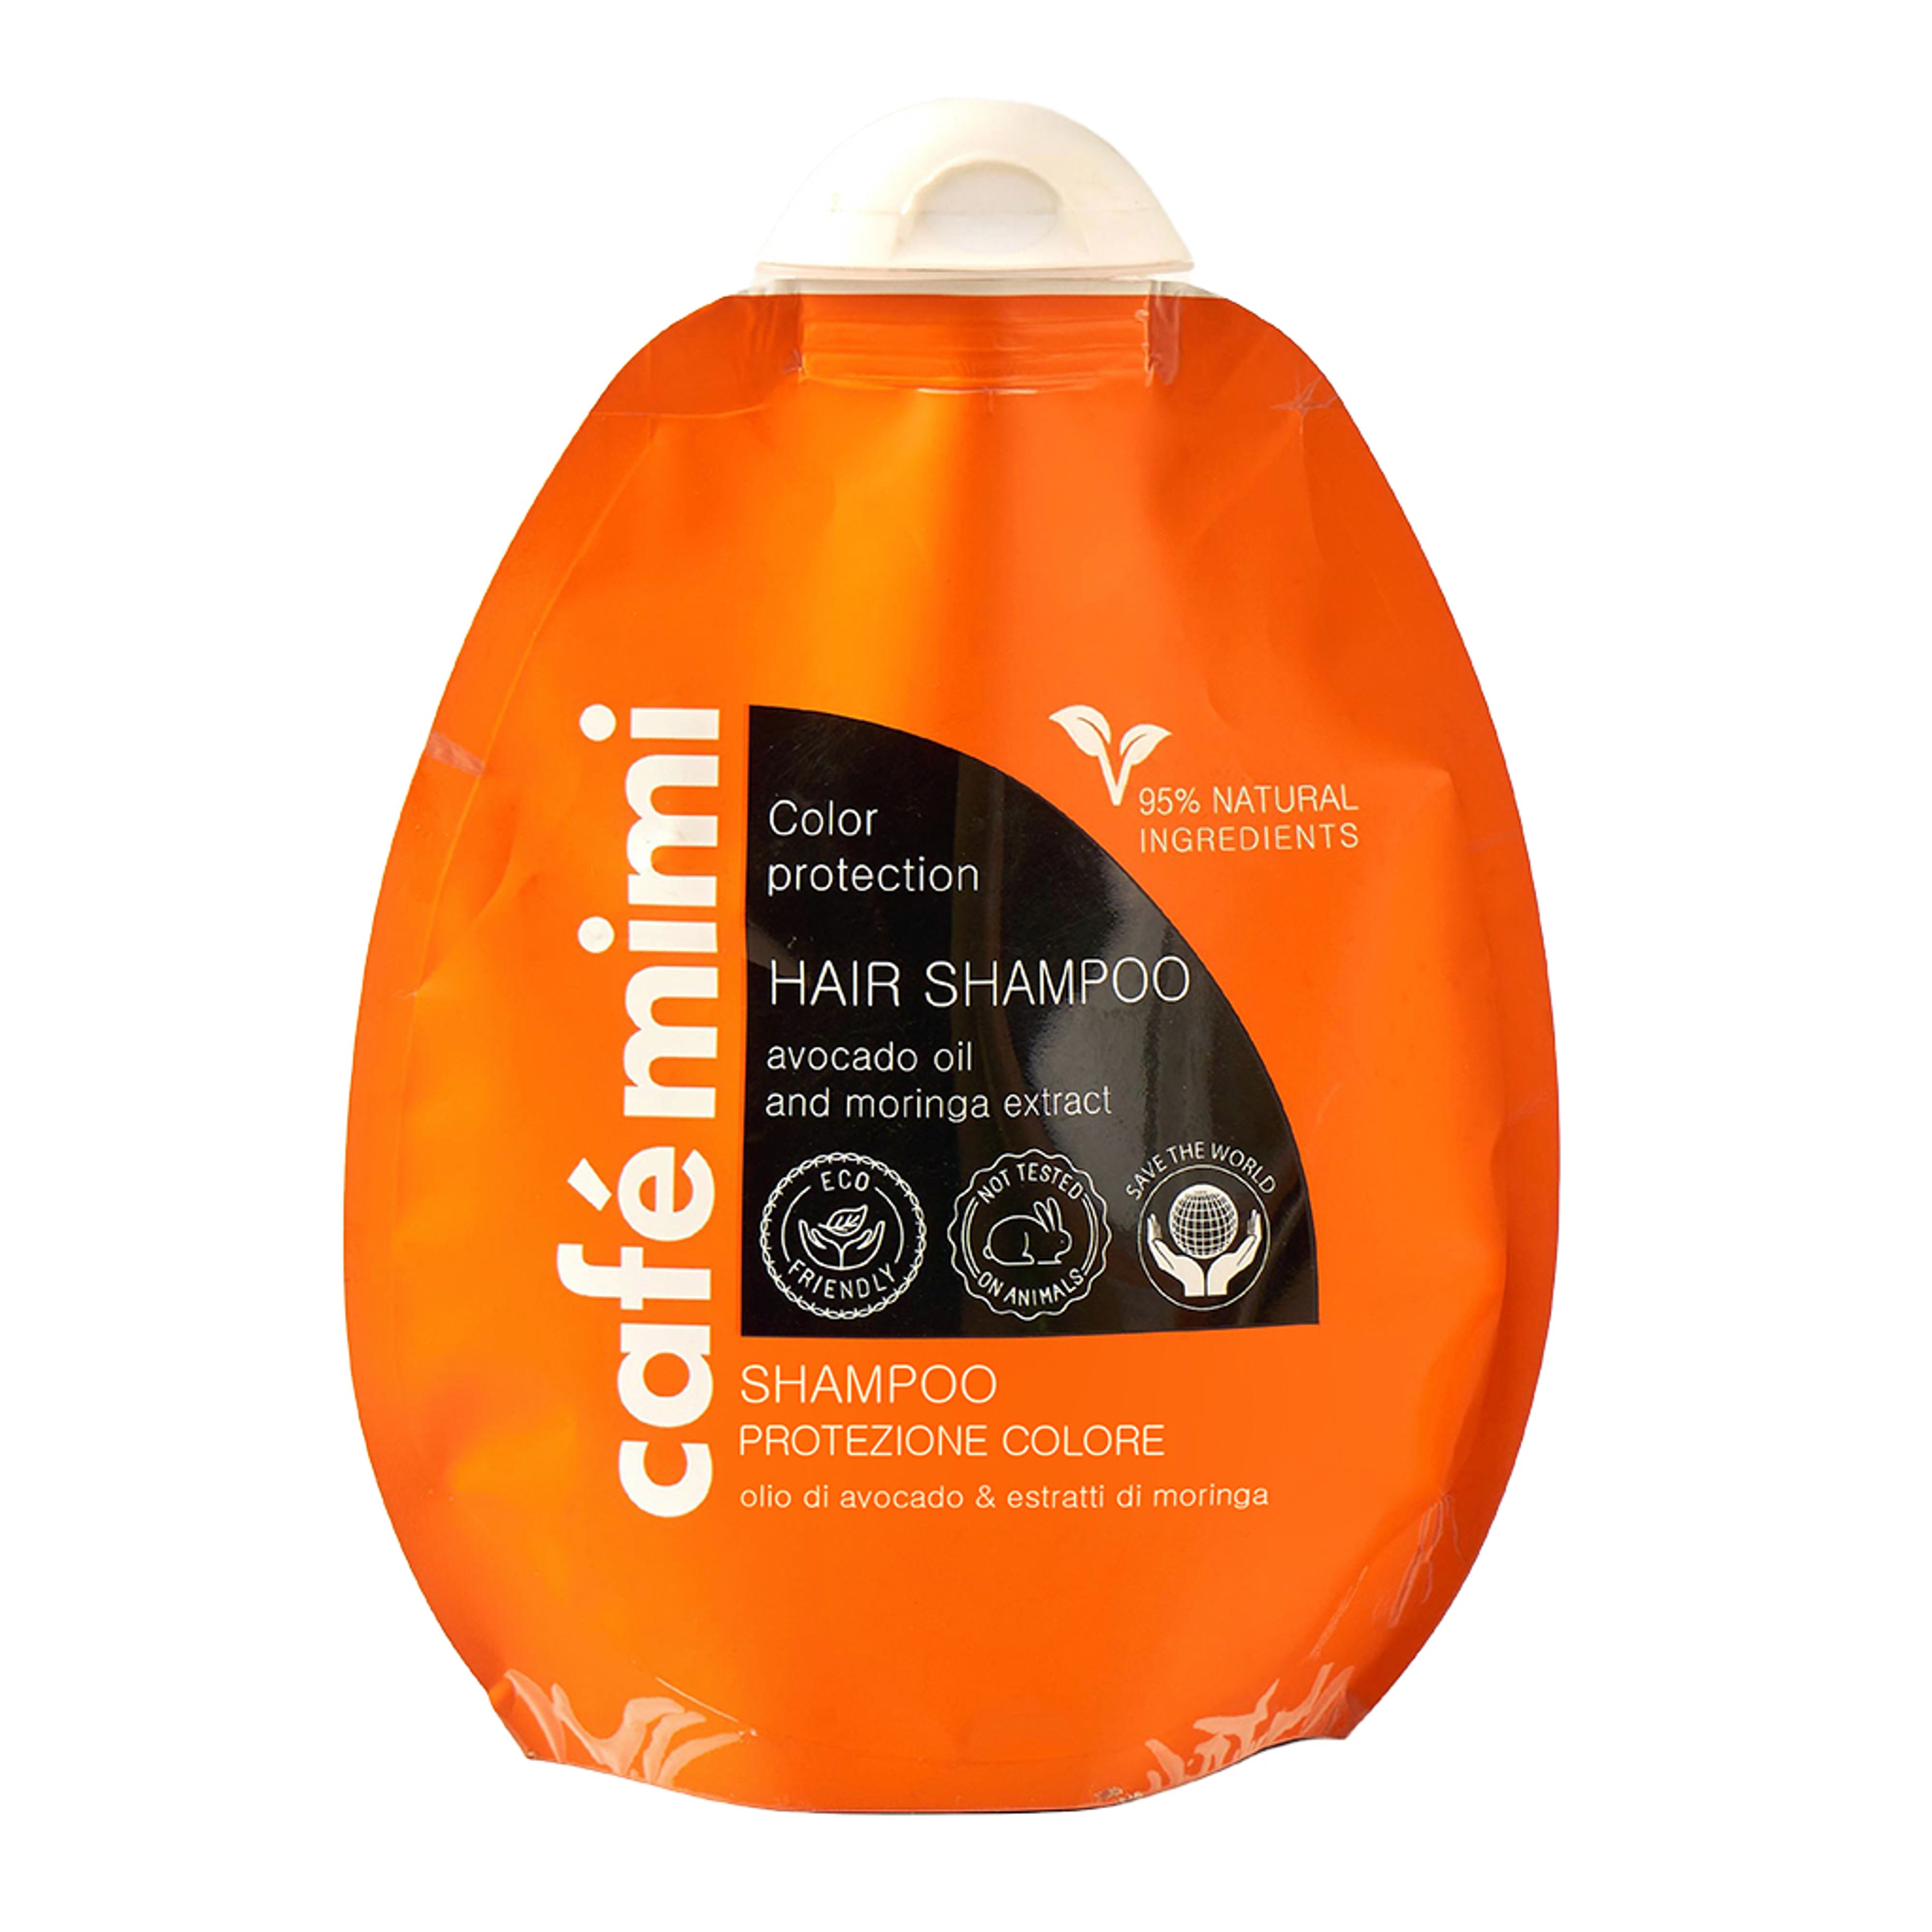 Café Mimi Shampoo Protezione Colore
olio Di Avocado & Estratti Di Moringa 1